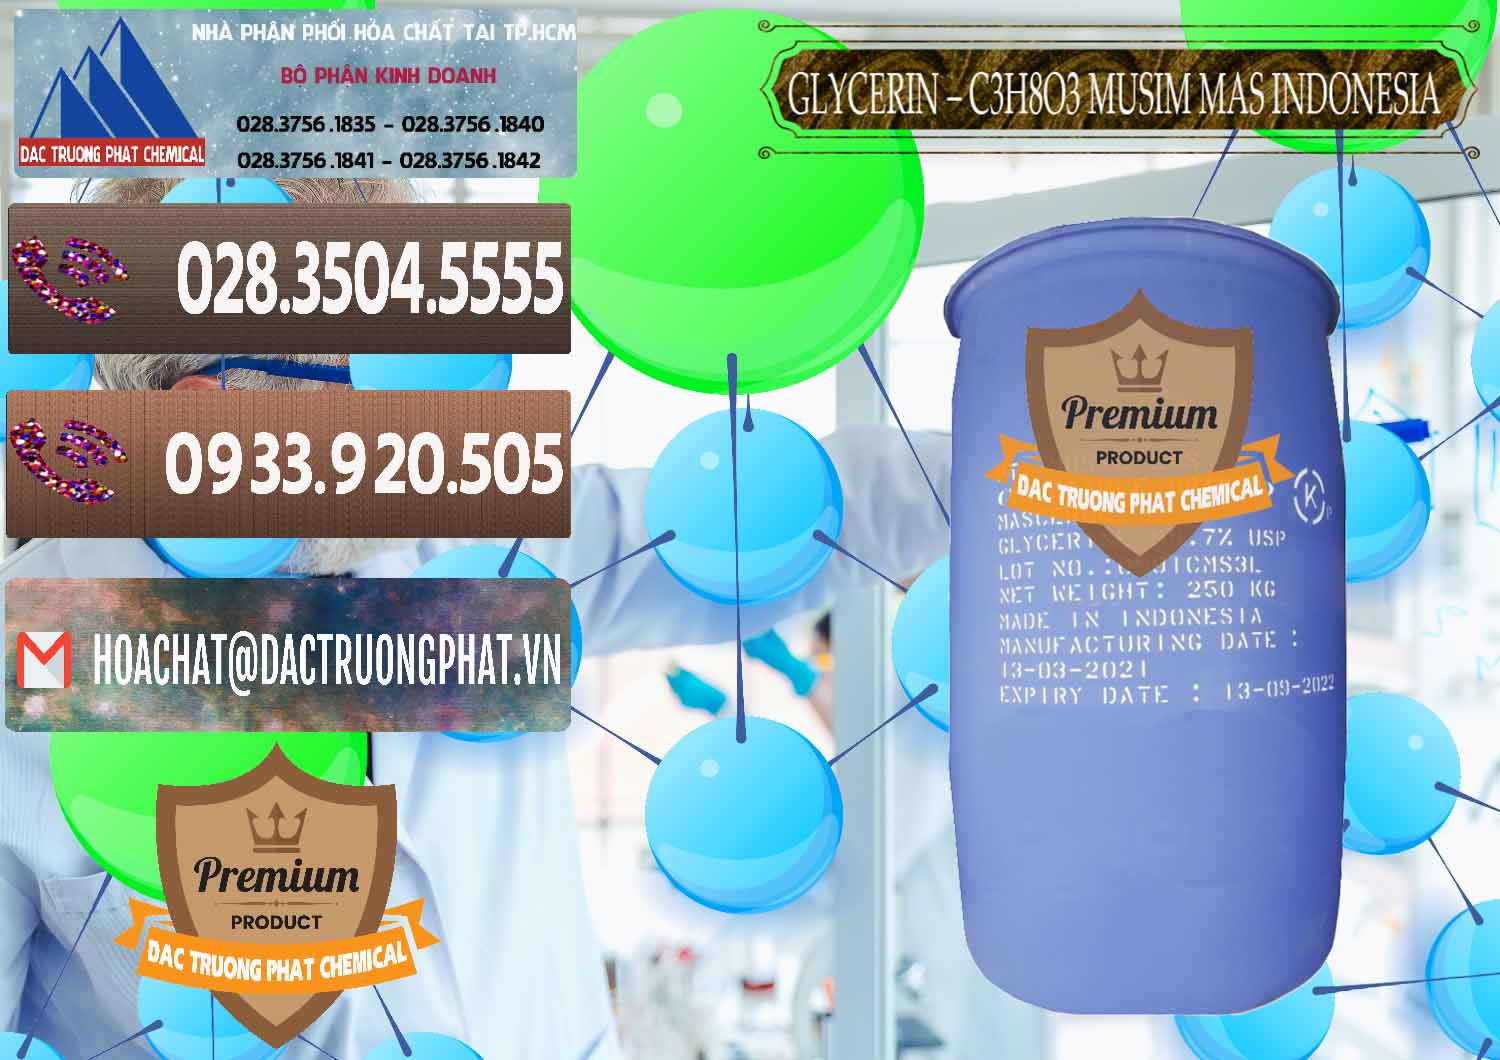 Công ty chuyên bán & phân phối Glycerin – C3H8O3 99.7% Musim Mas Indonesia - 0272 - Nhà cung cấp - phân phối hóa chất tại TP.HCM - hoachatviet.net